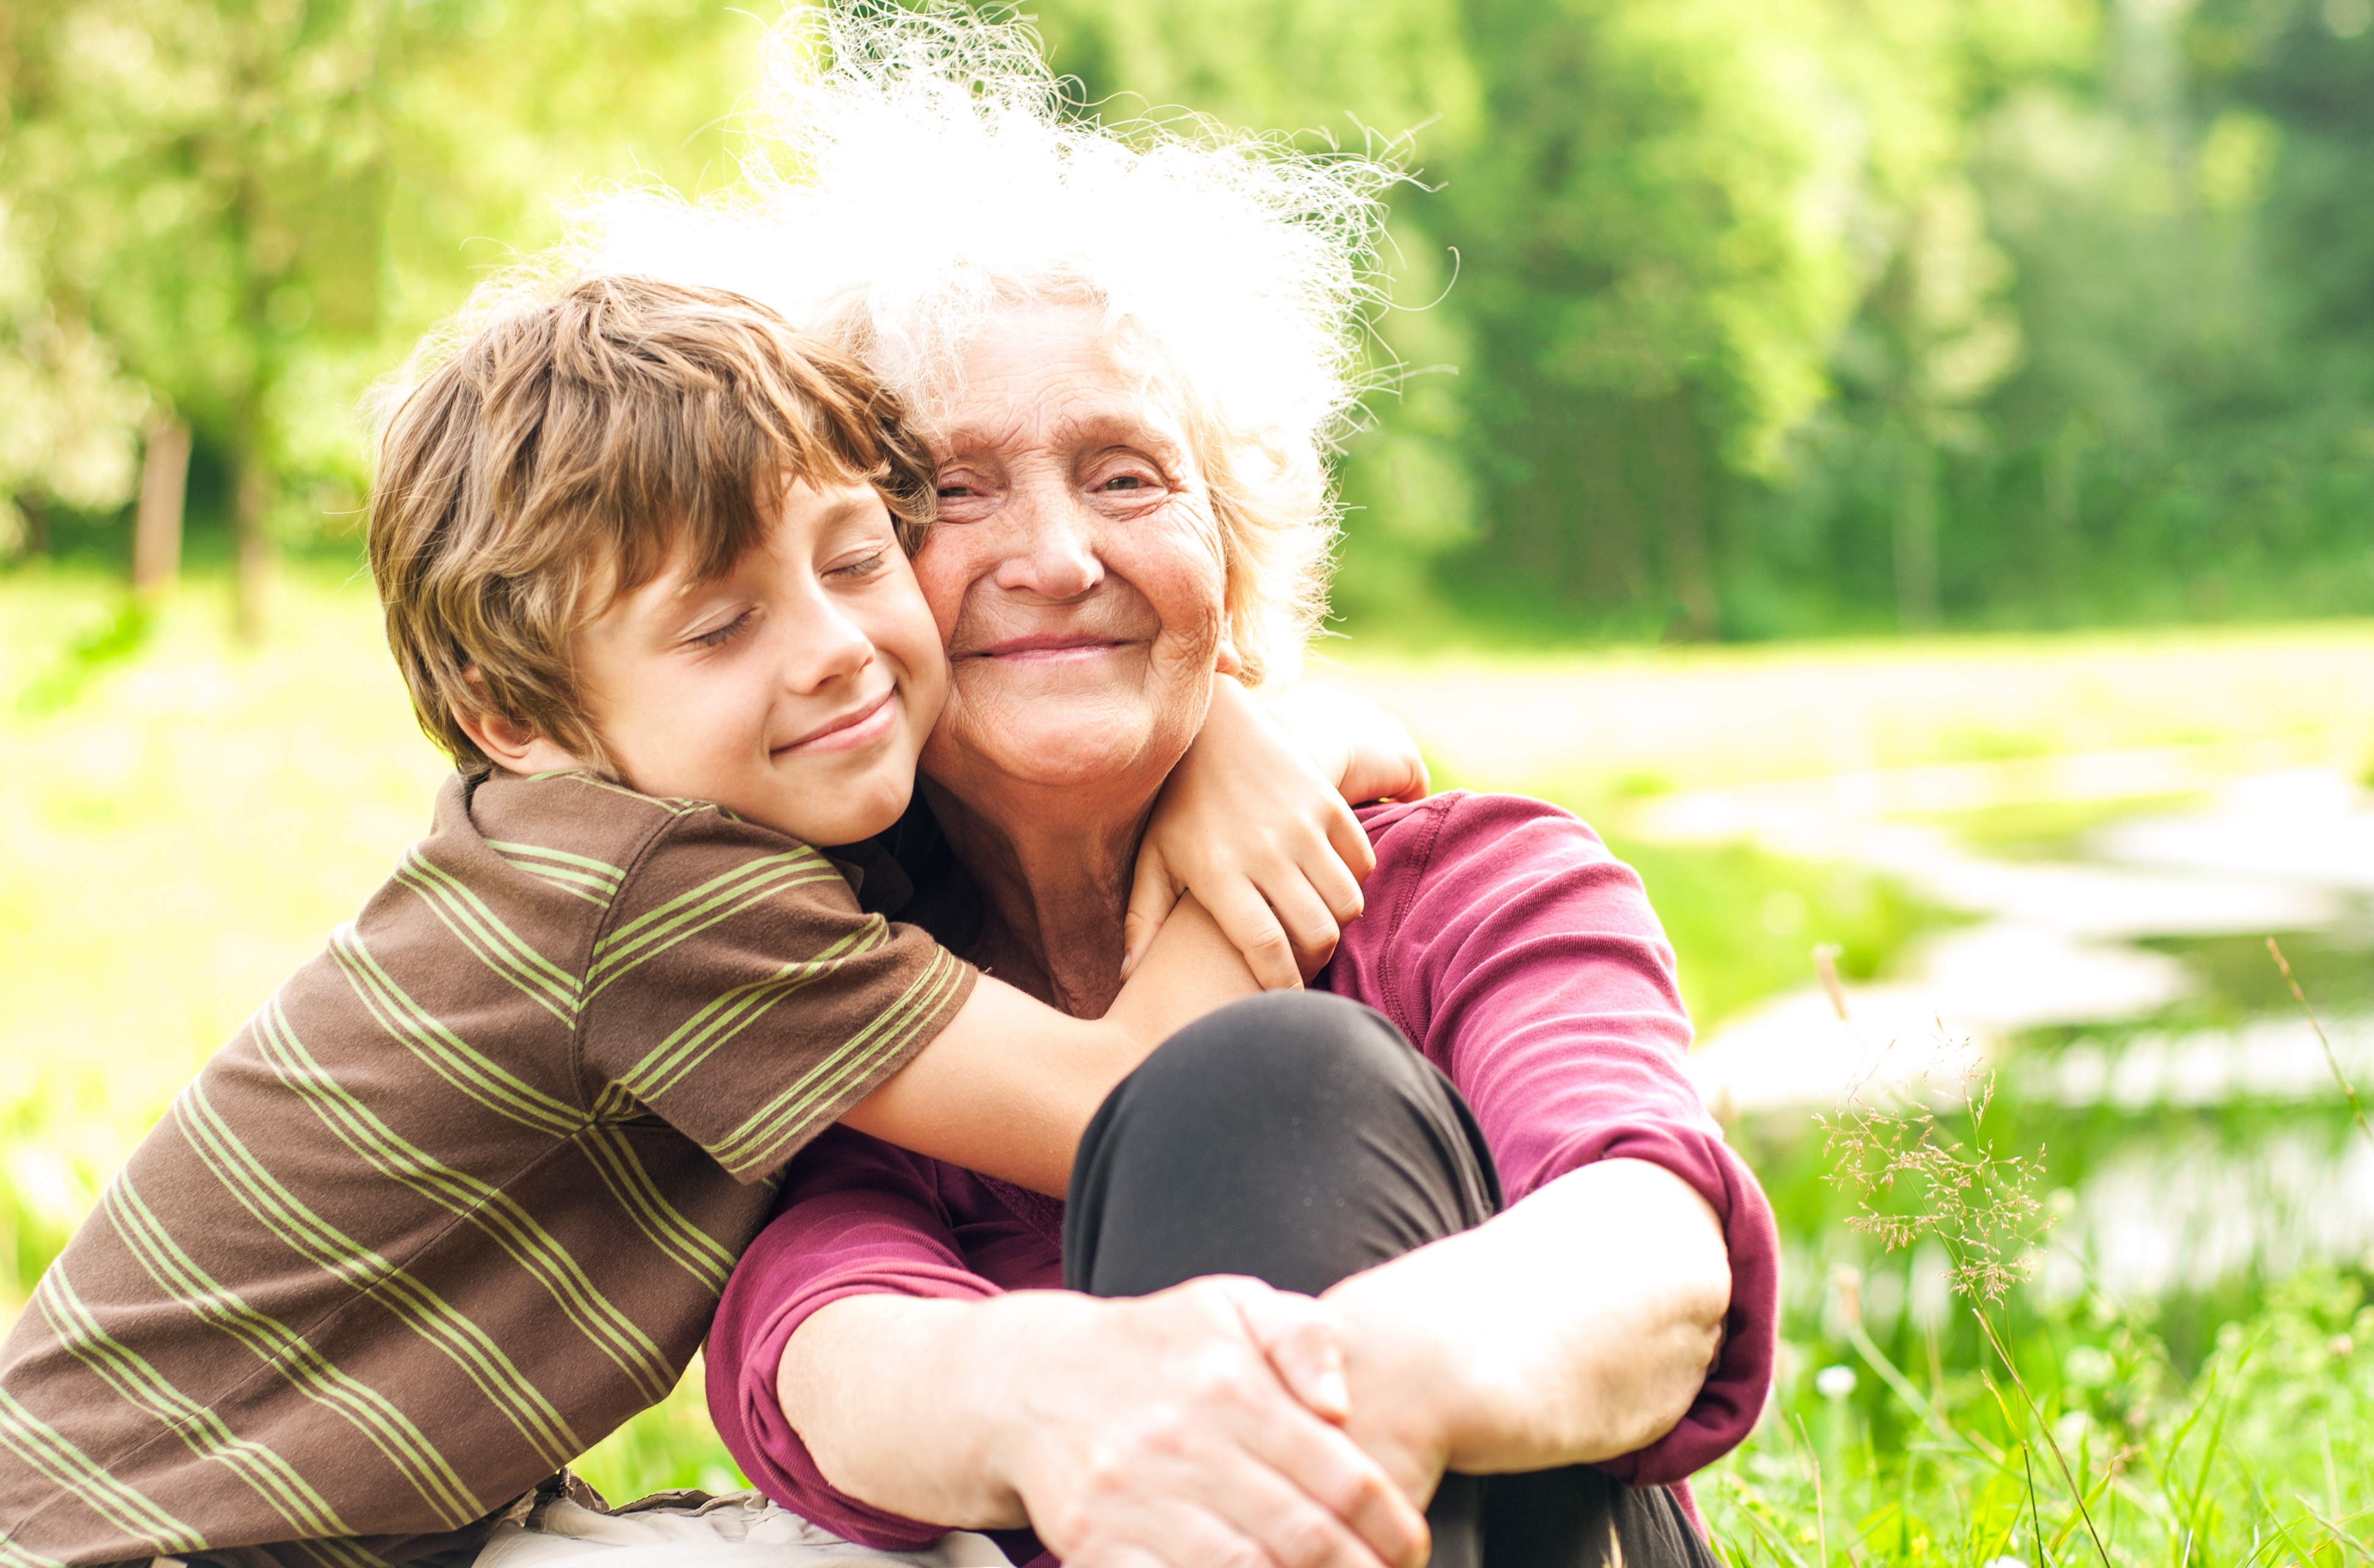 Une grand-mère qui reçoit un câlin chaleureux de son petit-fils | Source : Shutterstock